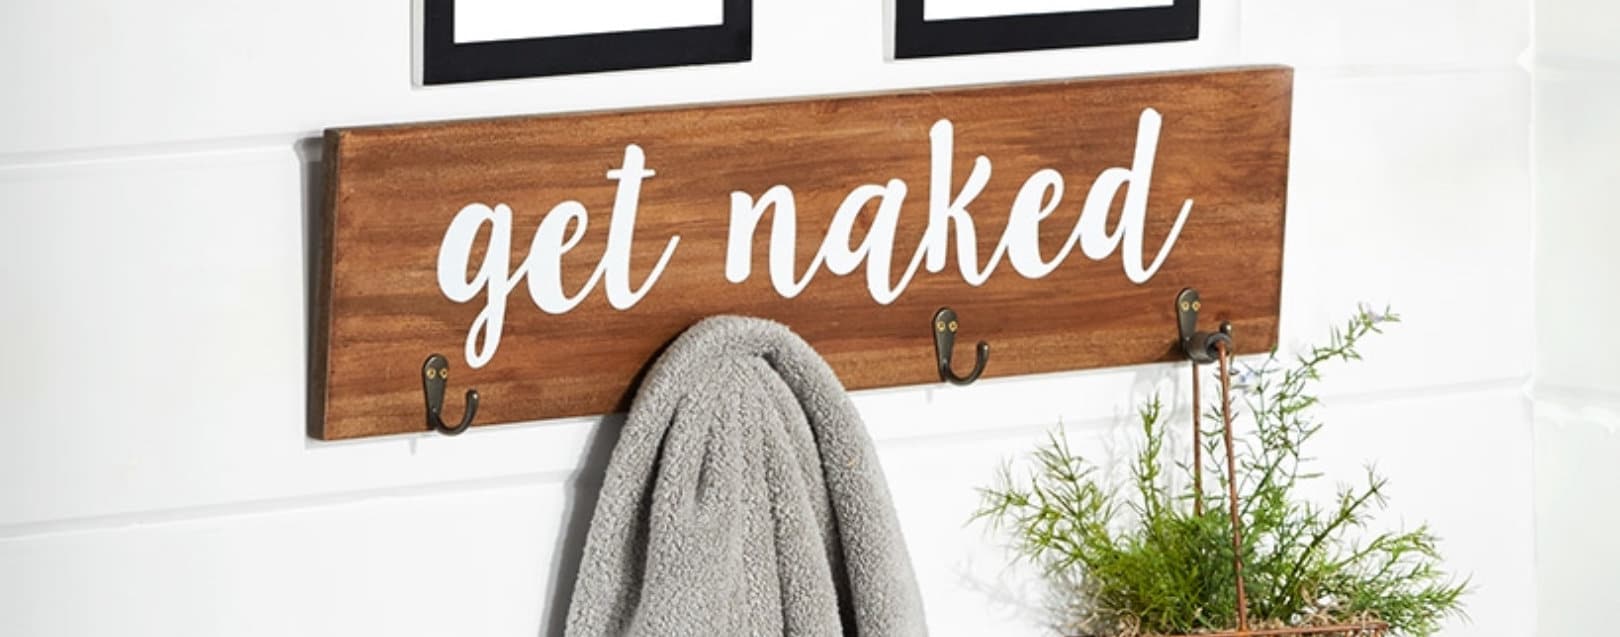 Get Naked Bathroom Towel Hooks Sign